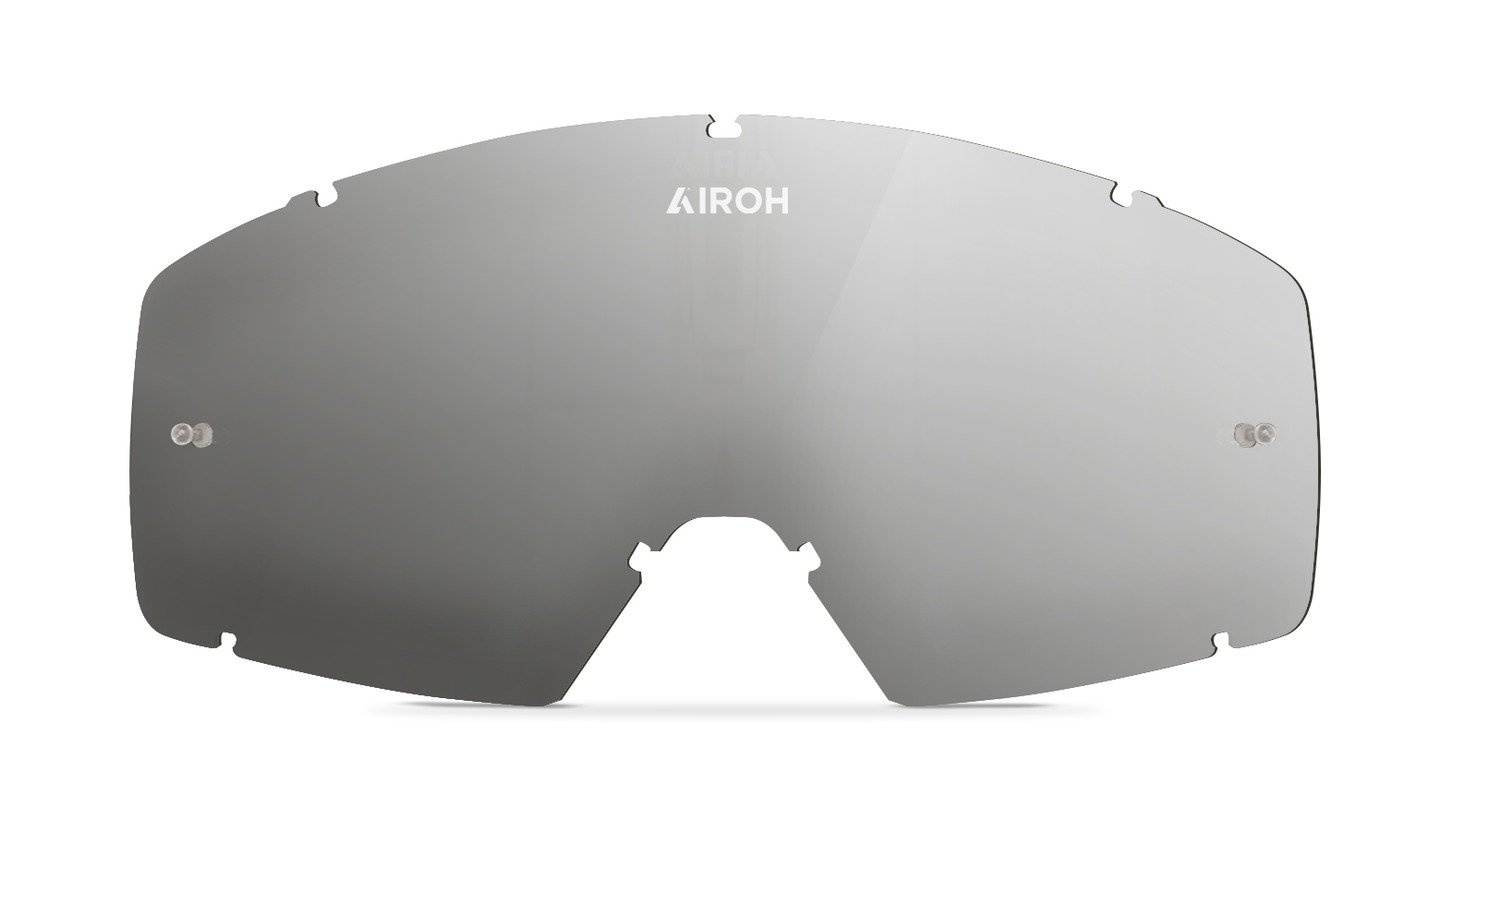 Obrázek produktu plexi pro brýle BLAST XR1, AIROH (stříbrné) LXR181